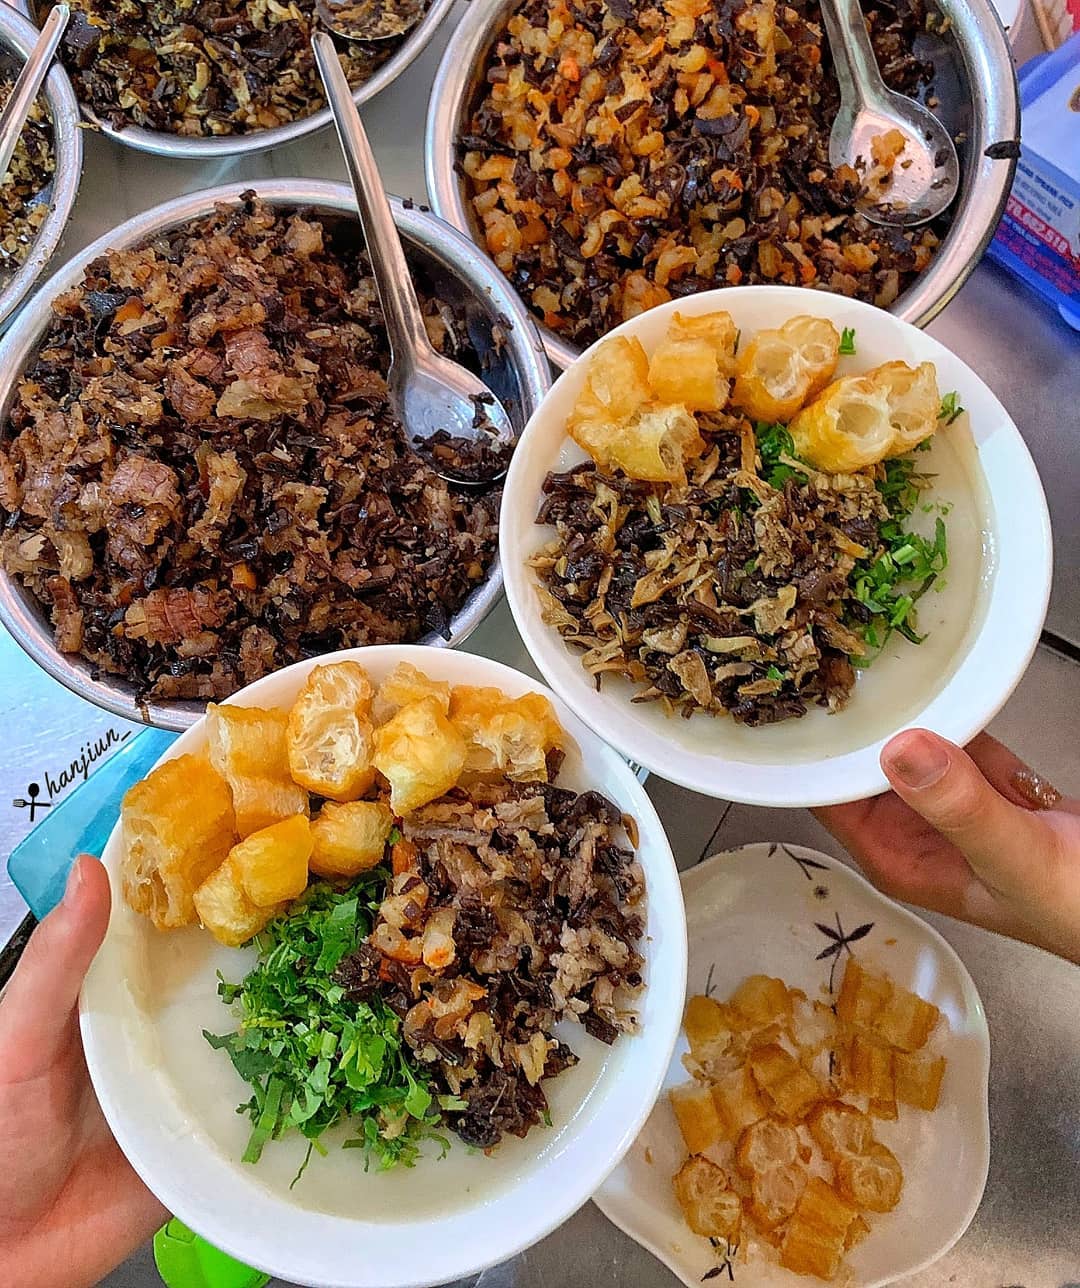 Khu chợ ẩm thực là nơi tuyệt vời để khám phá nền ẩm thực đa dạng của Việt Nam. Sự kết hợp giữa hương vị, mùi thơm và thị giác sẽ khiến bạn thật sự trầm trồ. Hãy xem hình ảnh liên quan để khám phá những quán ăn đầy thú vị và đặc sắc tại khu chợ ẩm thực.